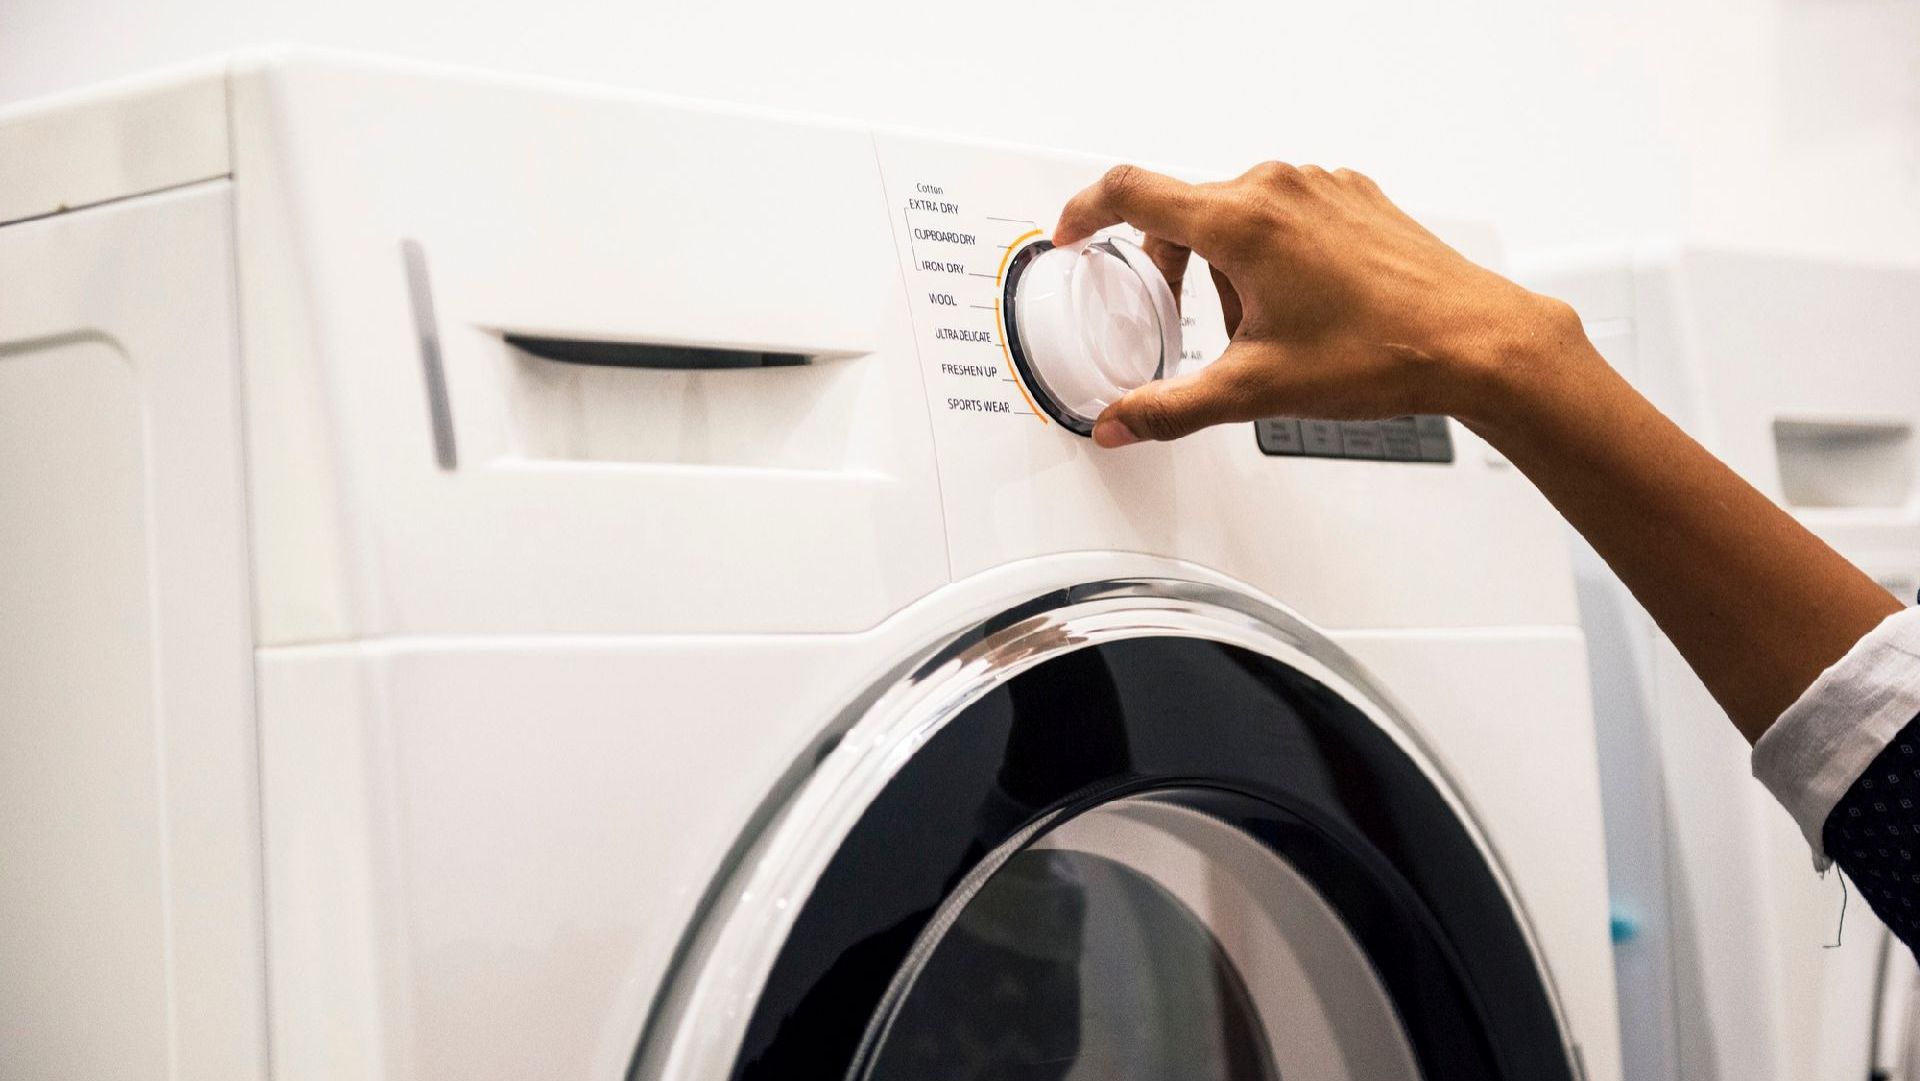 Nueva función en lavadoras inteligentes captura microplásticos para reducir la contaminación